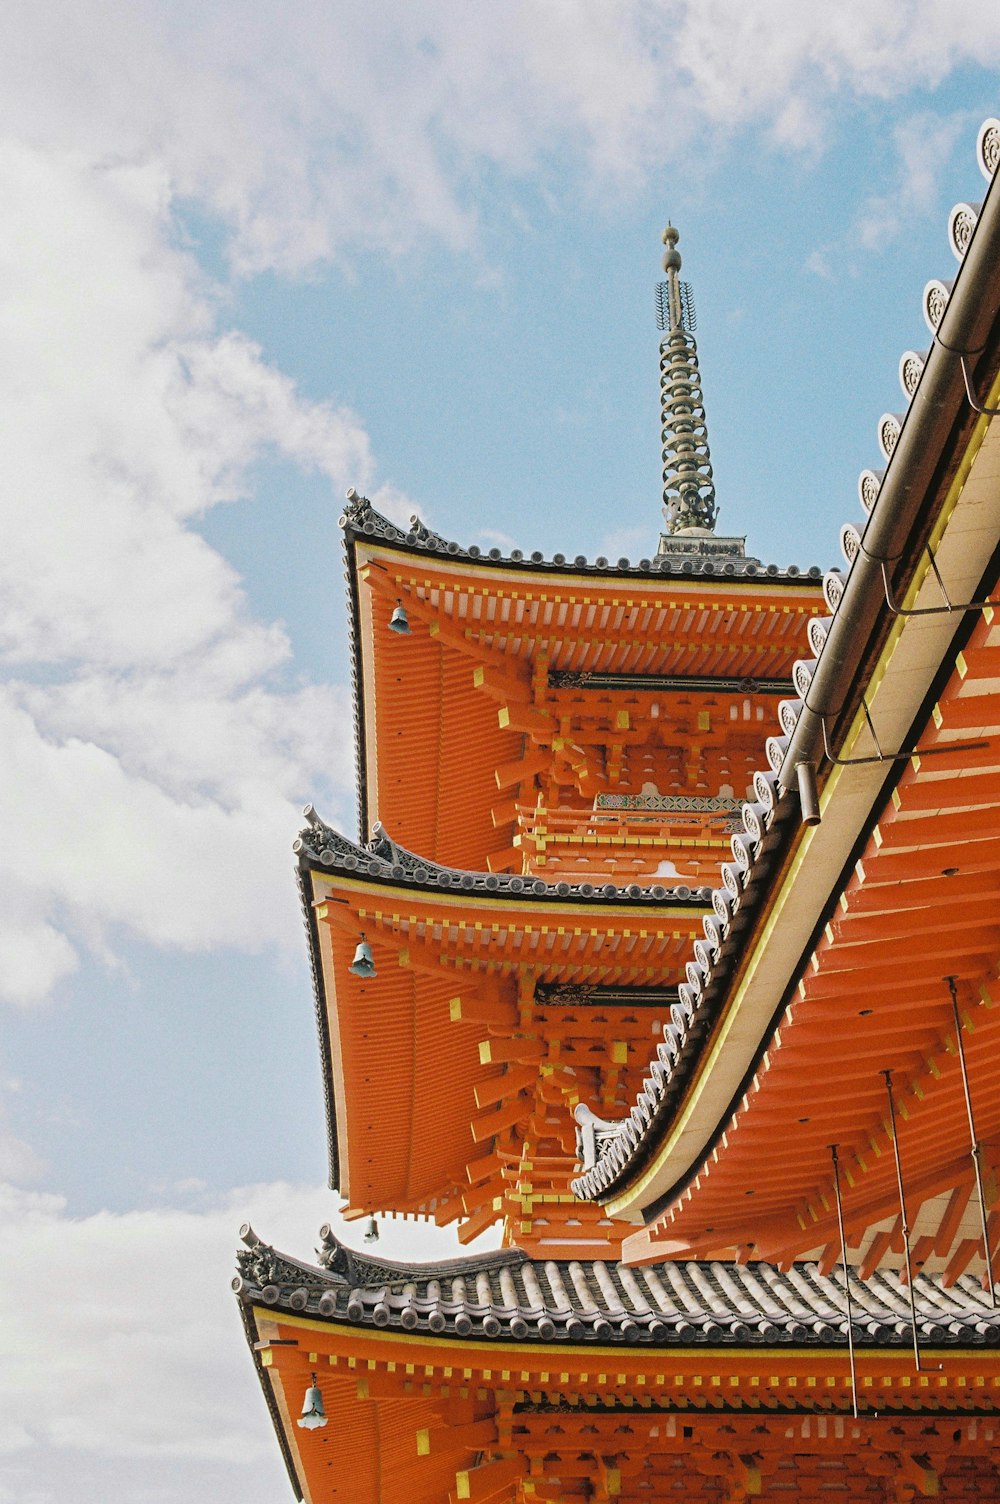 Templo de la pagoda de madera naranja y gris